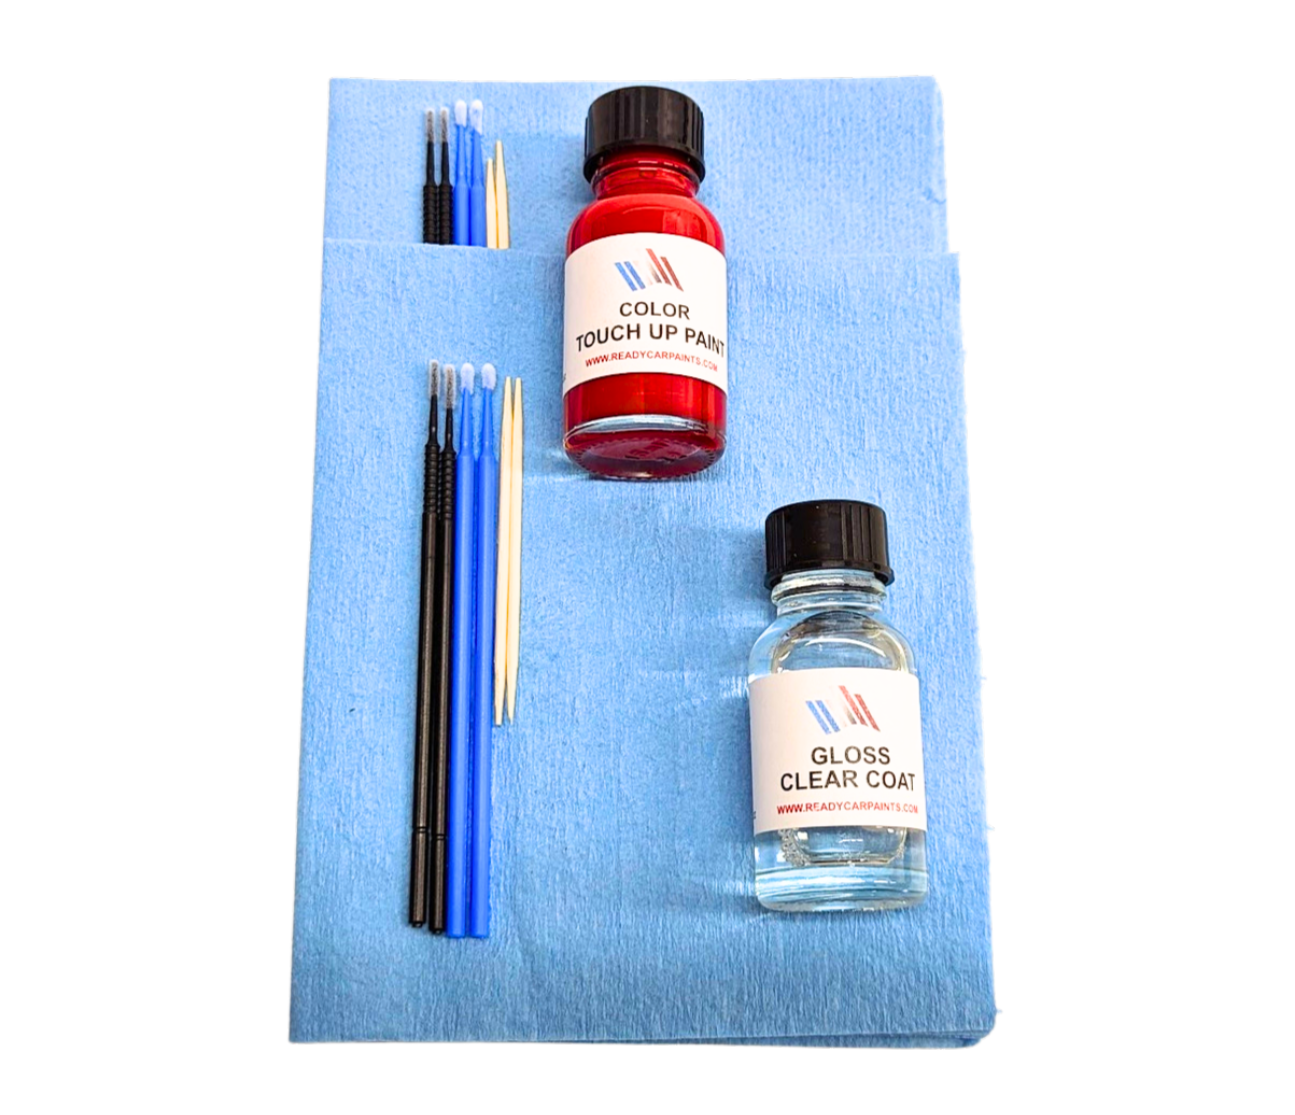 MERCEDES 385/5385 Cote dAzur Light Blue Metallic Touch Up Paint Kit 100% OEM Color Match